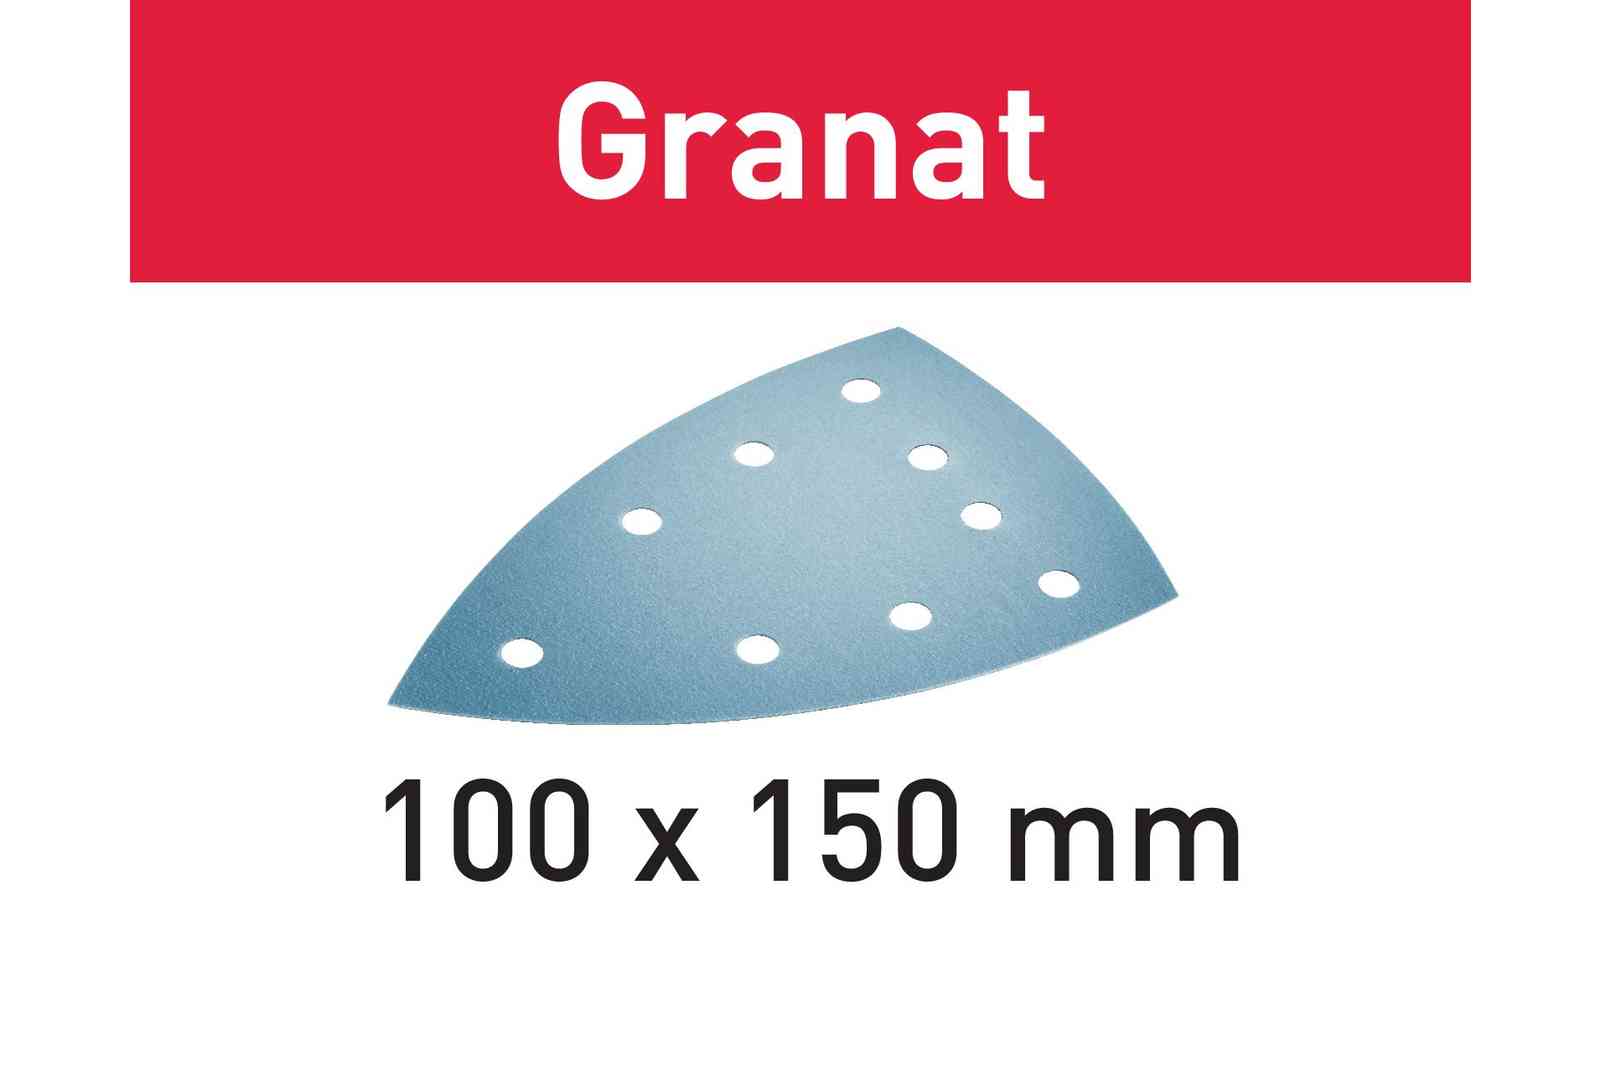 Festool Schuurpapier STF DELTA/9 P240 GR/100 Granat - 577550